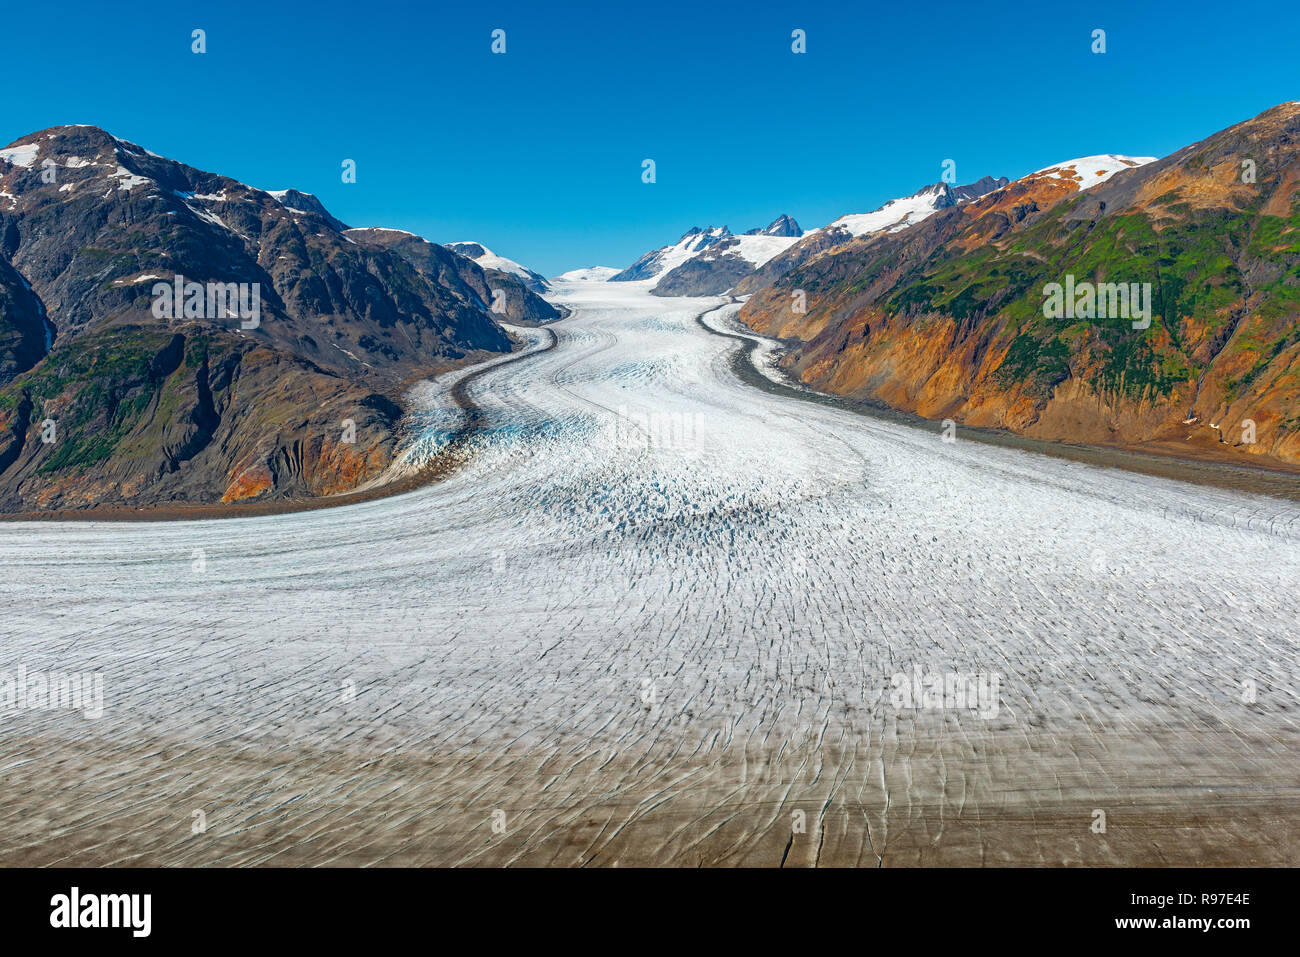 Die majestätischen Ice flow Der Salmon Gletscher und die Grenze Bergkette in der Nähe von Hyder in Alaska, Vereinigte Staaten von Amerika (USA). Stockfoto